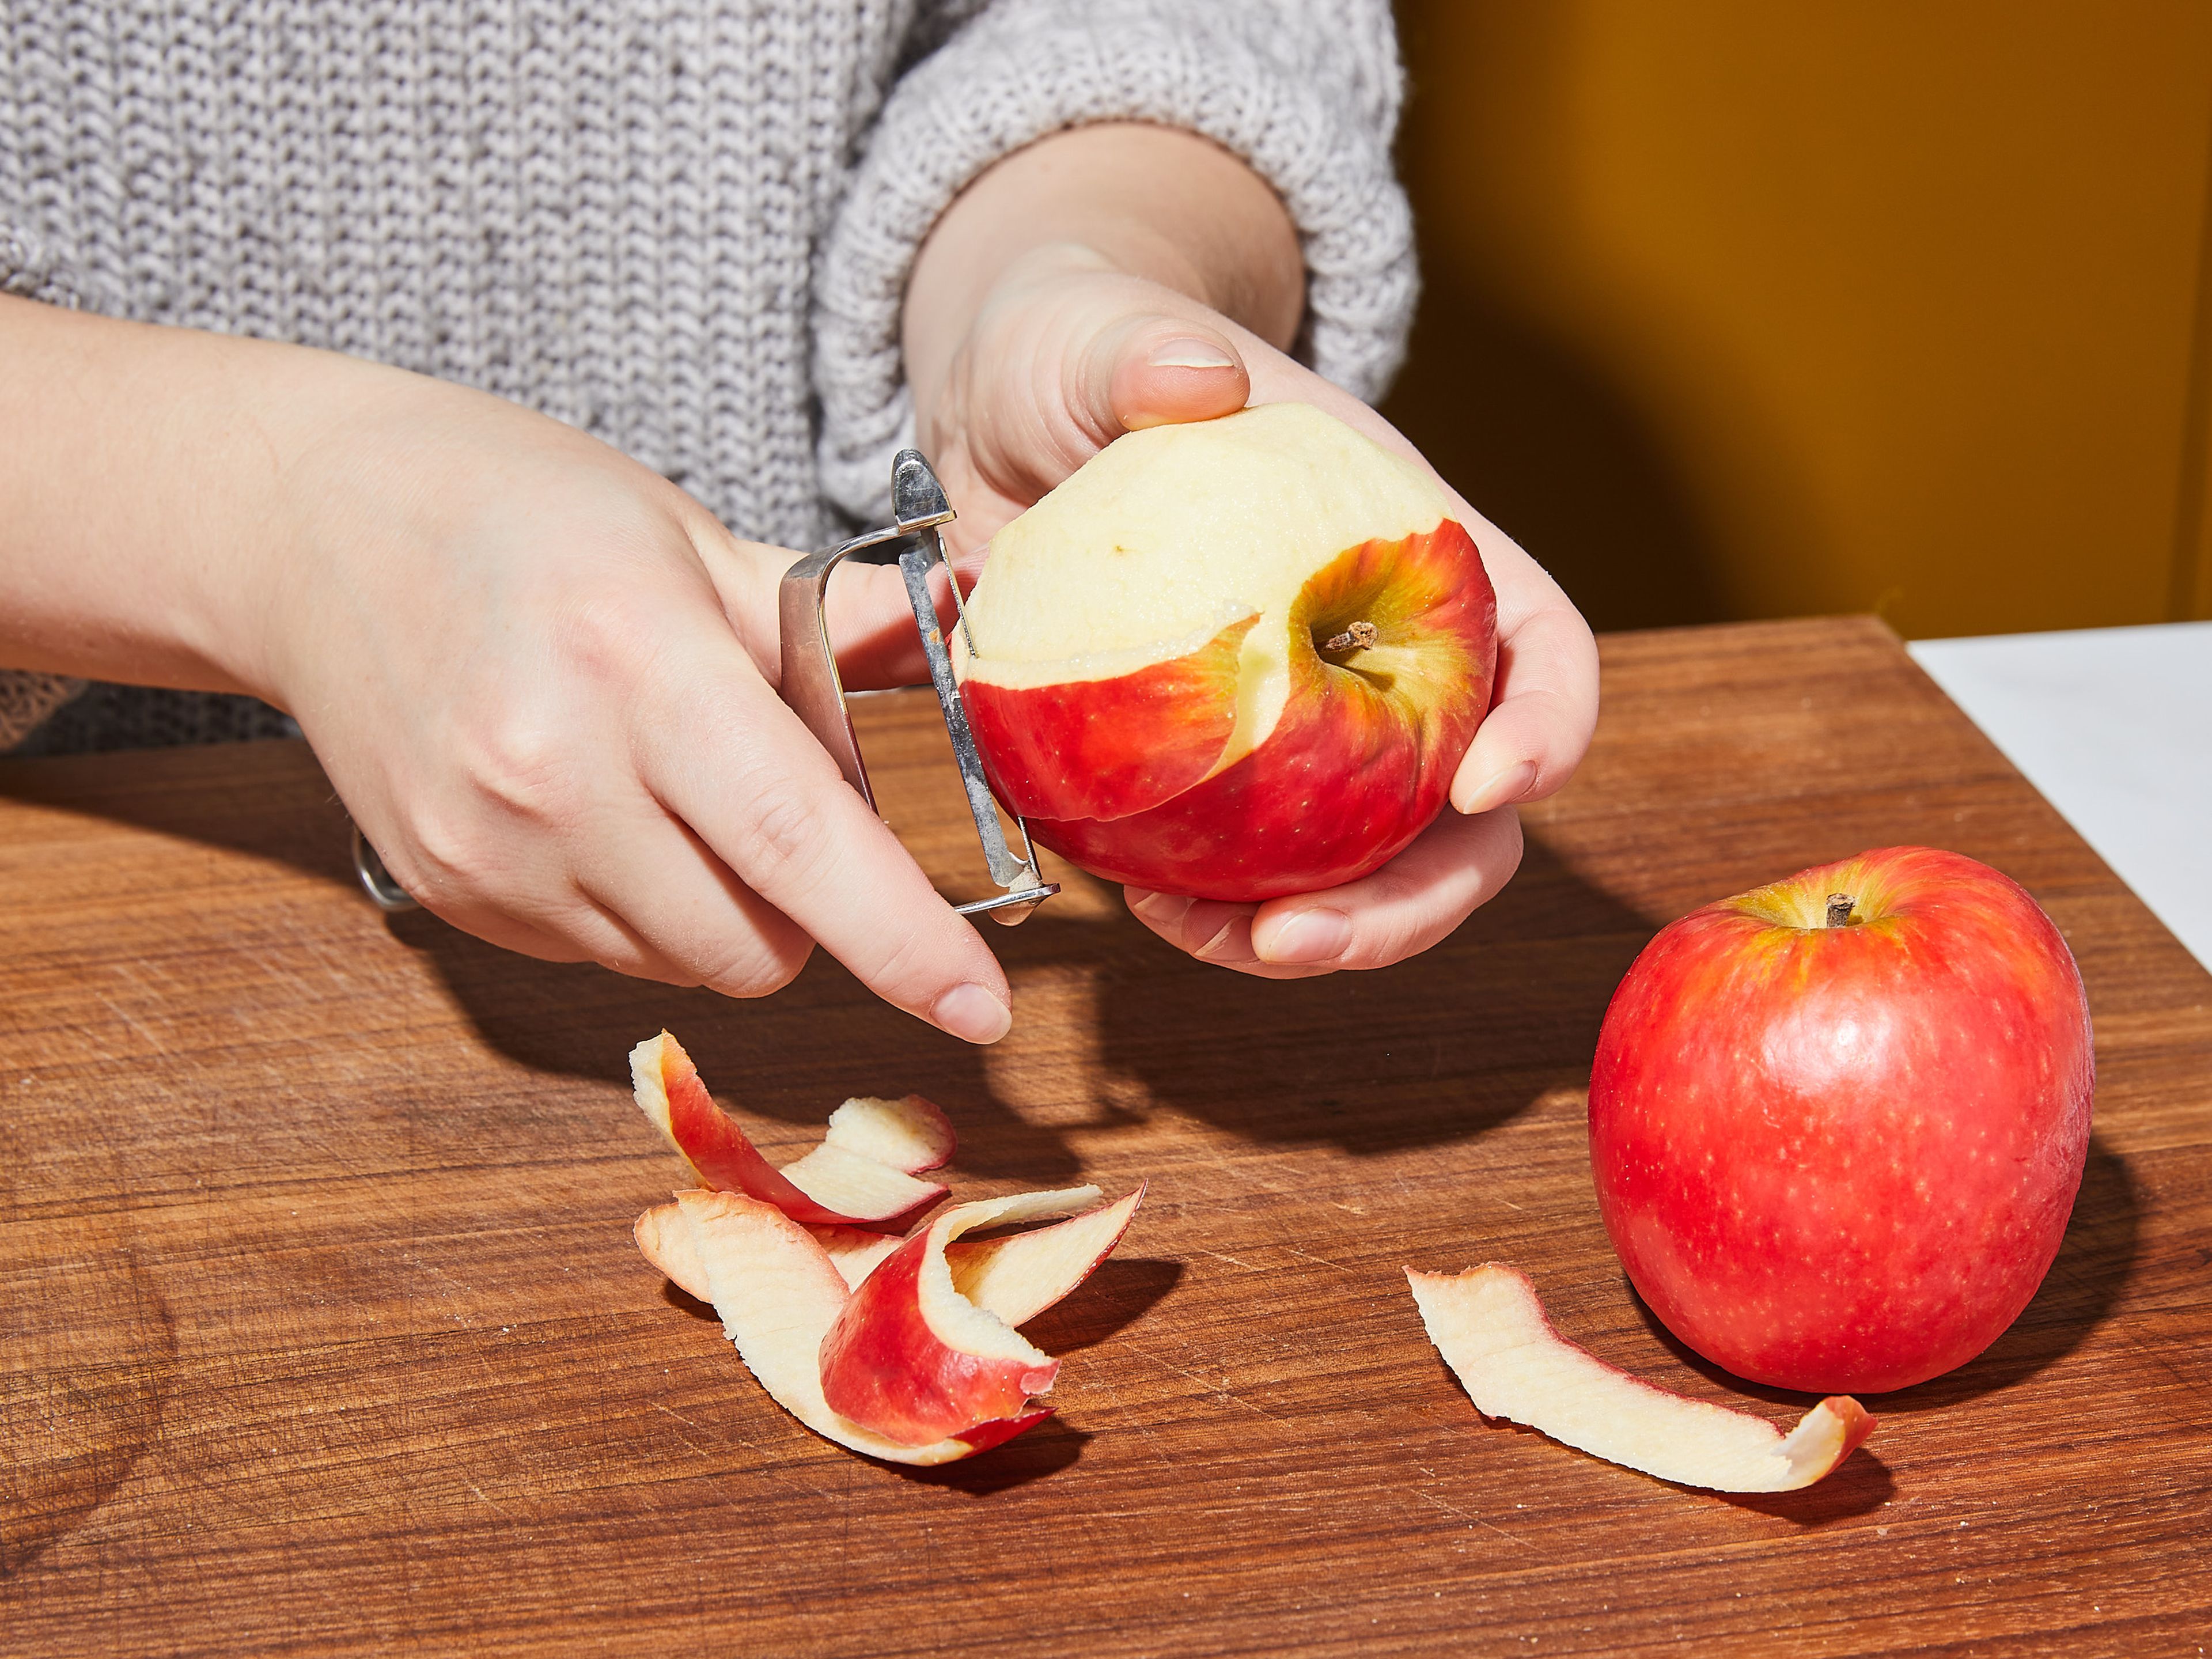 Äpfel schälen, entkernen und in kleine Stücke schneiden. Mit einer Prise Zimt und Zitronensaft in einen kleinen Topf geben und bei niedriger bis mittlerer Hitze ca. 5 Min. köcheln lassen, bis die Äpfel weich sind.